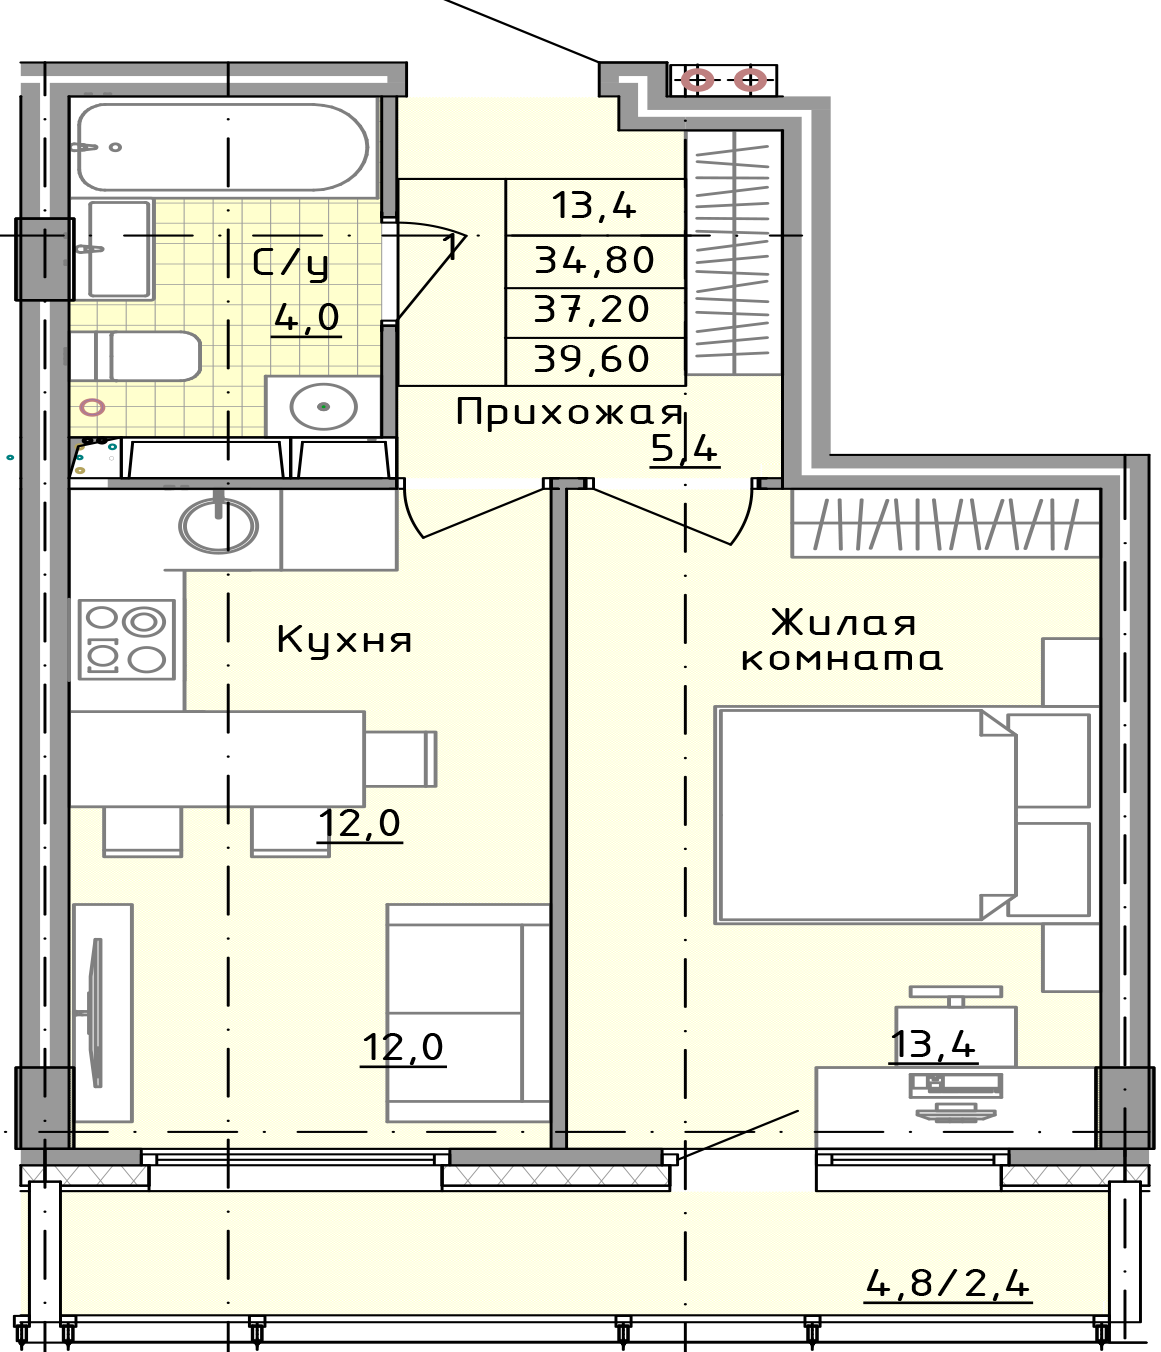 Купить однокомнатную квартиру в Твери в ЖК Зеленоградский - Купить .